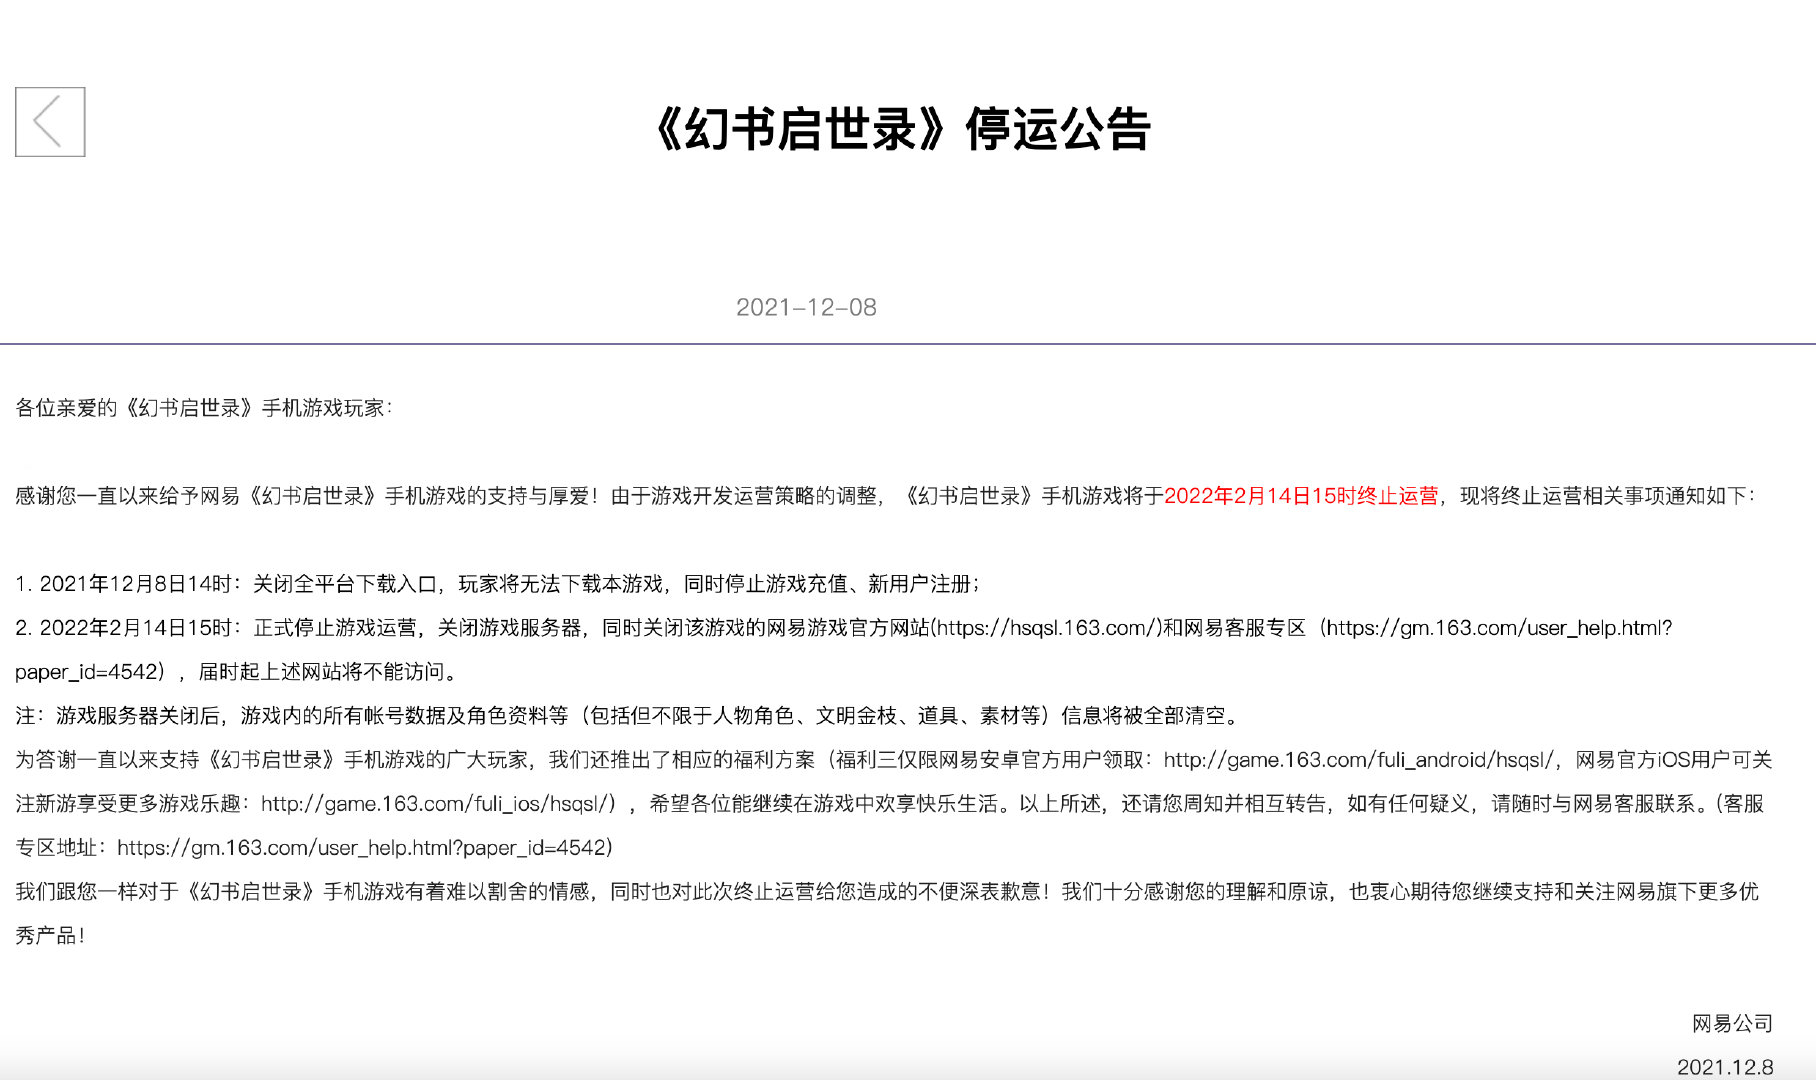 網易手遊《黑潮之上》發停運公告 3月14日停服